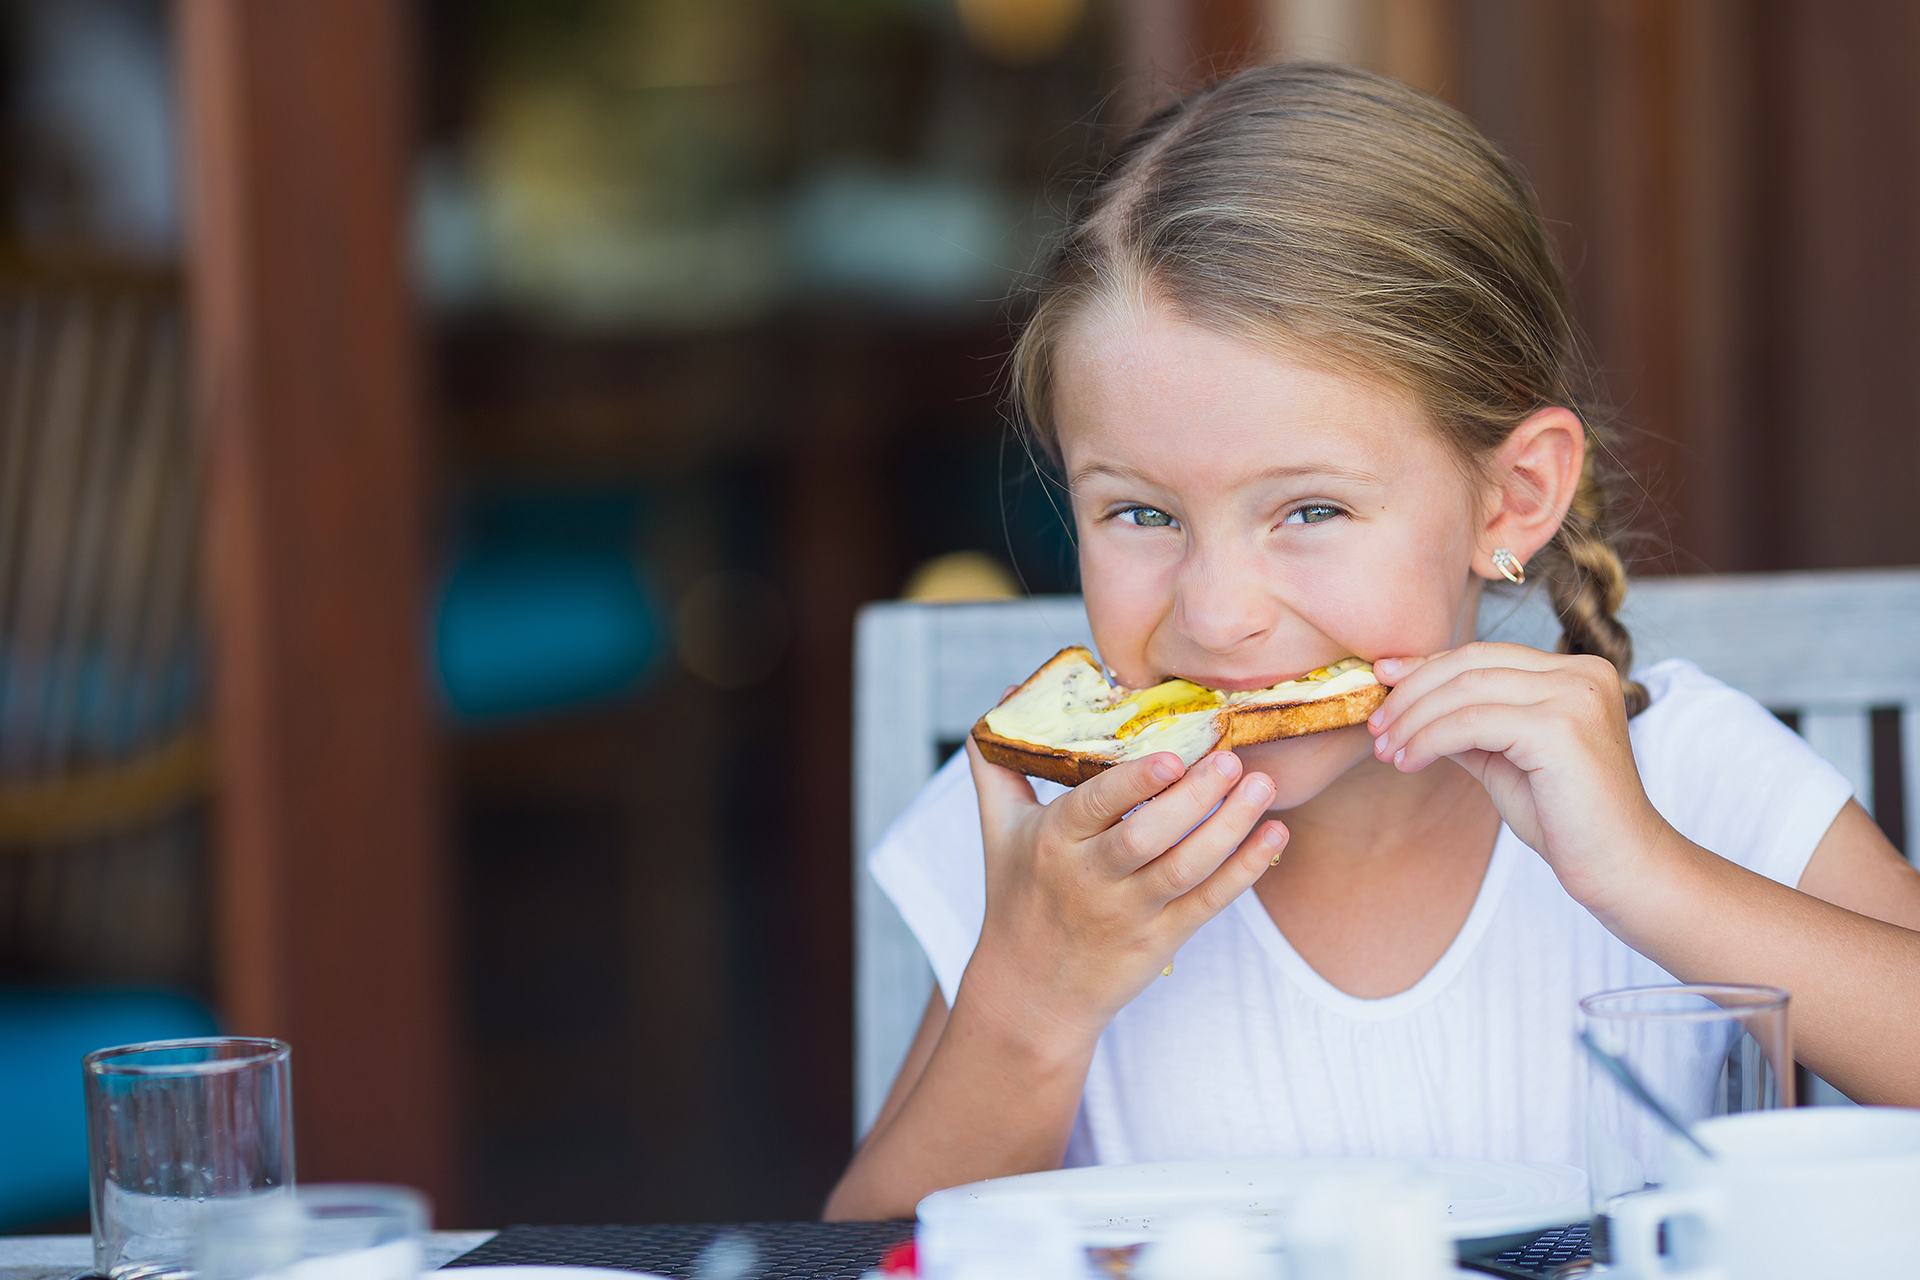 Сливочное масло девочка. Девушка ест хлеб с маслом. Девочка ест бутерброд с маслом. Хлеб с маслом девочка. Ребенок ест бутерброд.